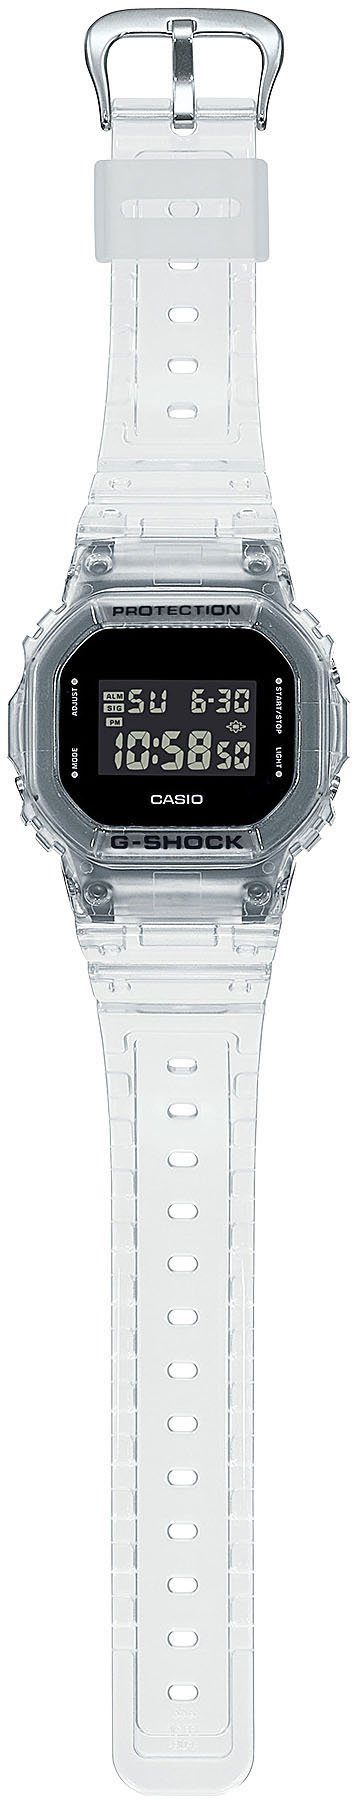 G-SHOCK CASIO DW-5600SKE-7ER Chronograph